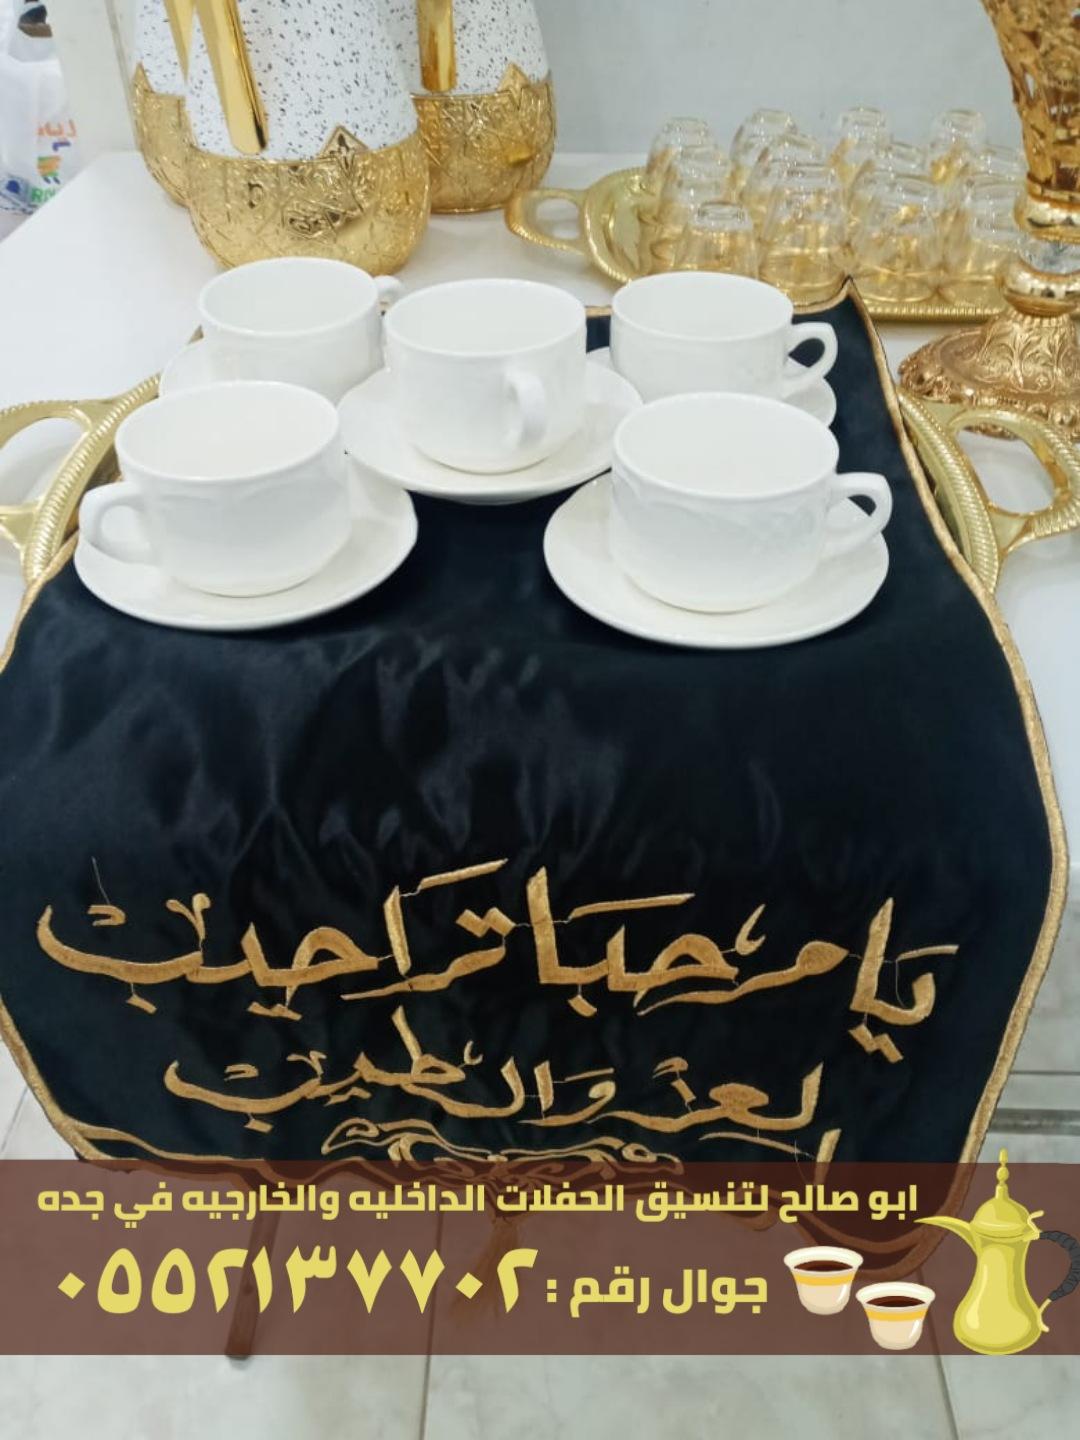 صبابين قهوه قهوجيات في جدة,0552137702 903938013